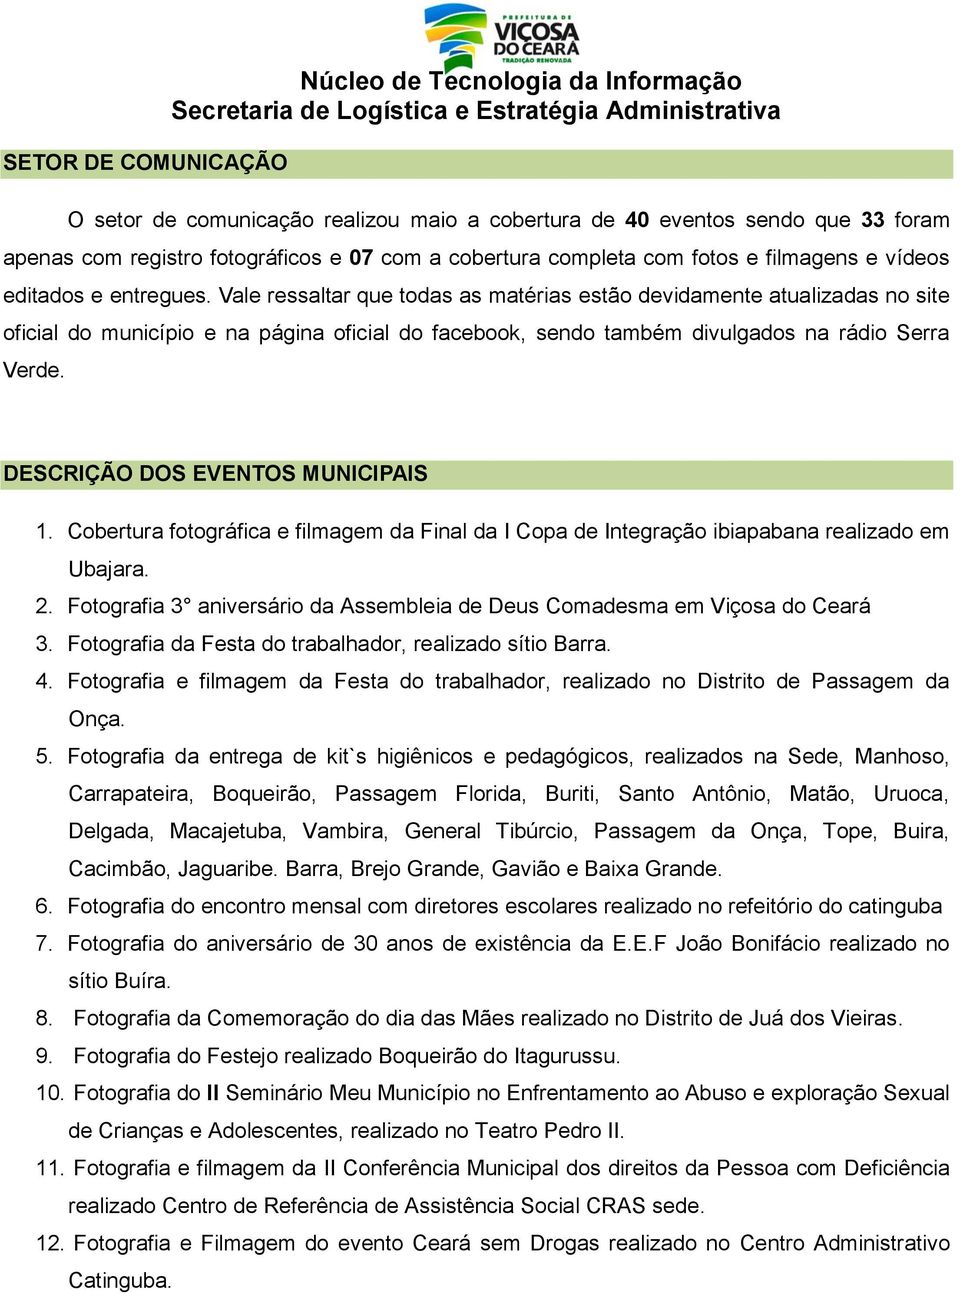 Vale ressaltar que todas as matérias estão devidamente atualizadas no site oficial do município e na página oficial do facebook, sendo também divulgados na rádio Serra Verde.